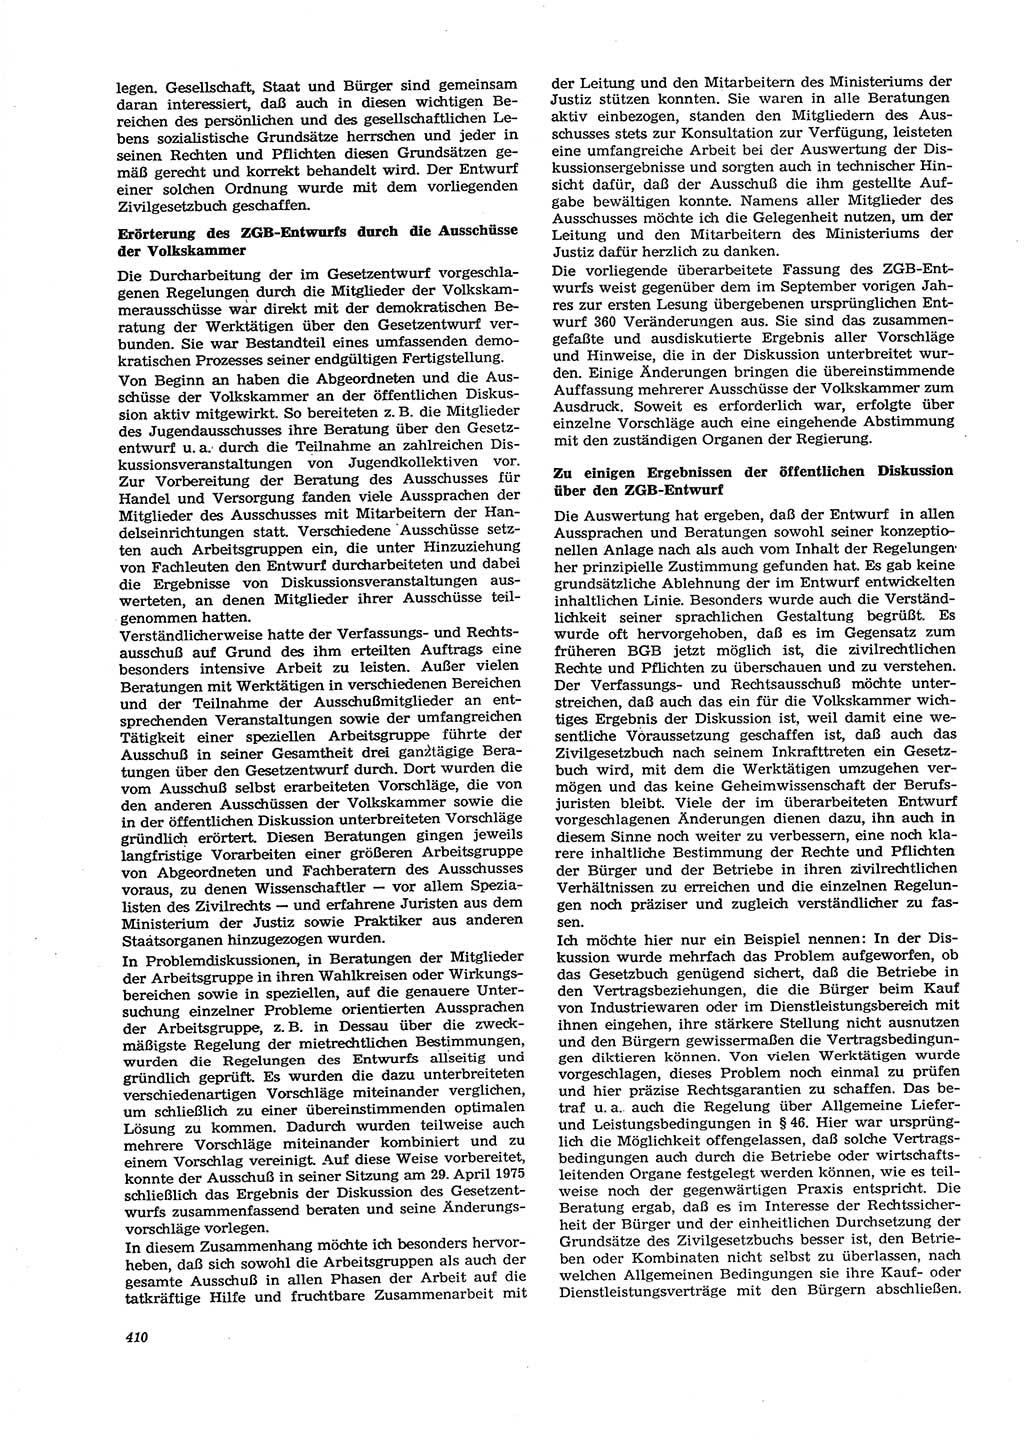 Neue Justiz (NJ), Zeitschrift für Recht und Rechtswissenschaft [Deutsche Demokratische Republik (DDR)], 29. Jahrgang 1975, Seite 410 (NJ DDR 1975, S. 410)